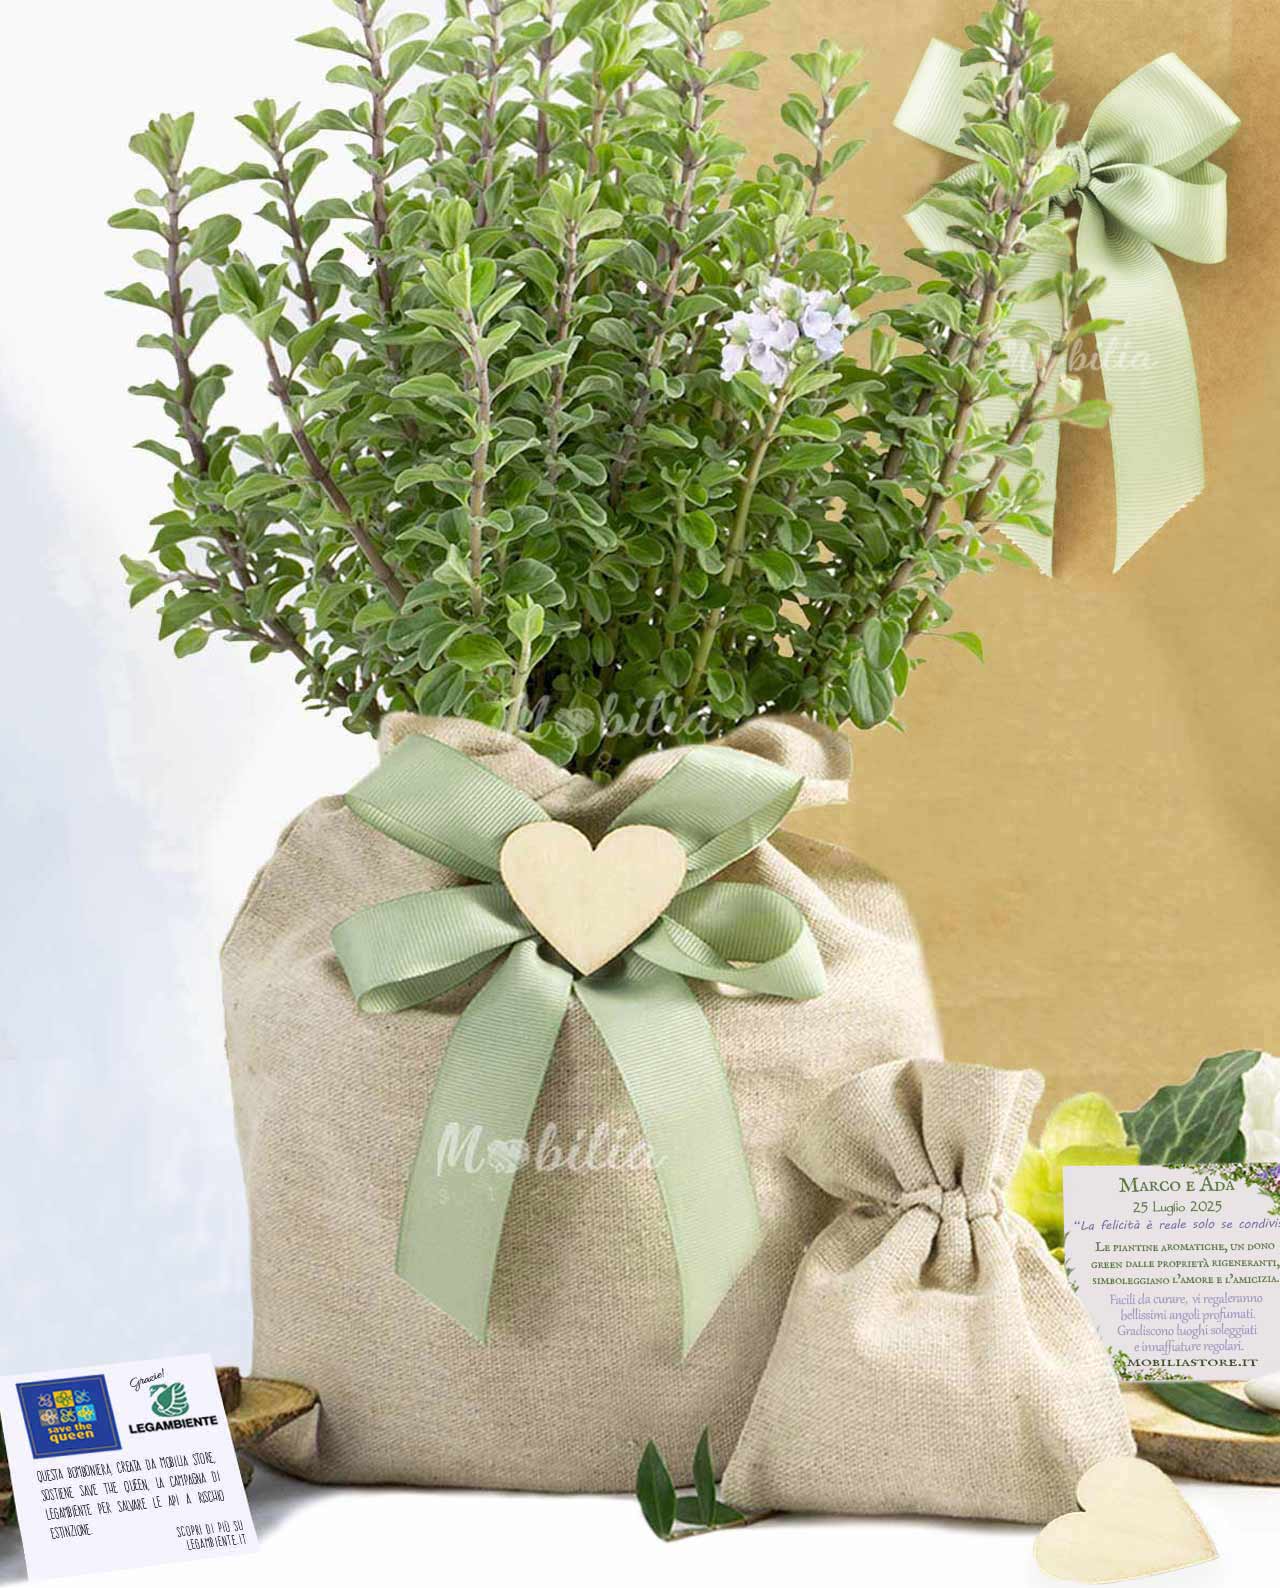 Le bomboniere matrimonio con piante: un tocco verde e naturale per il vostro giorno speciale